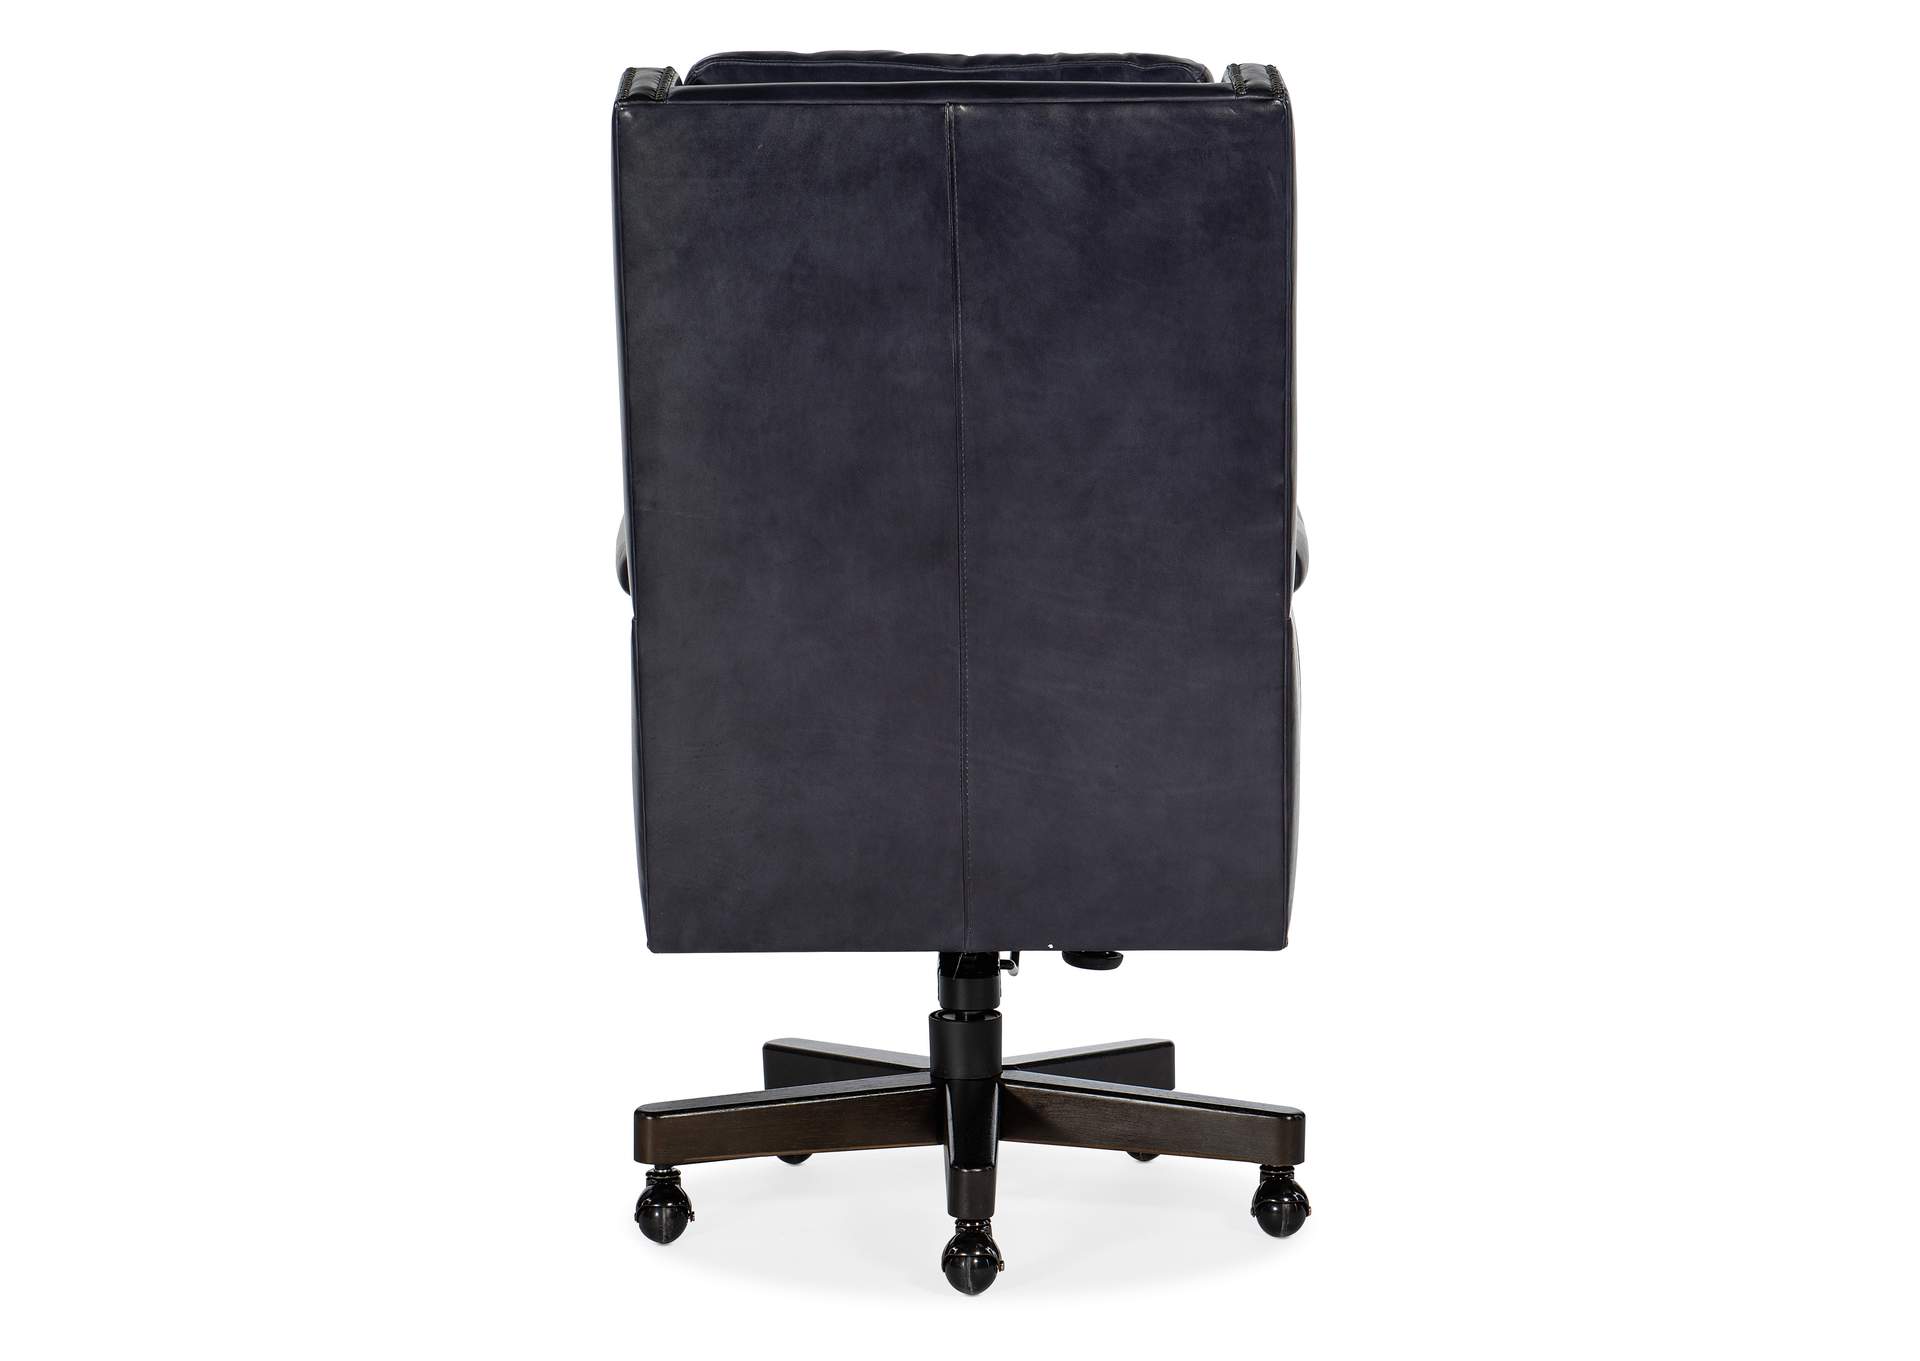 Beckett Executive Swivel Tilt Chair,Hooker Furniture